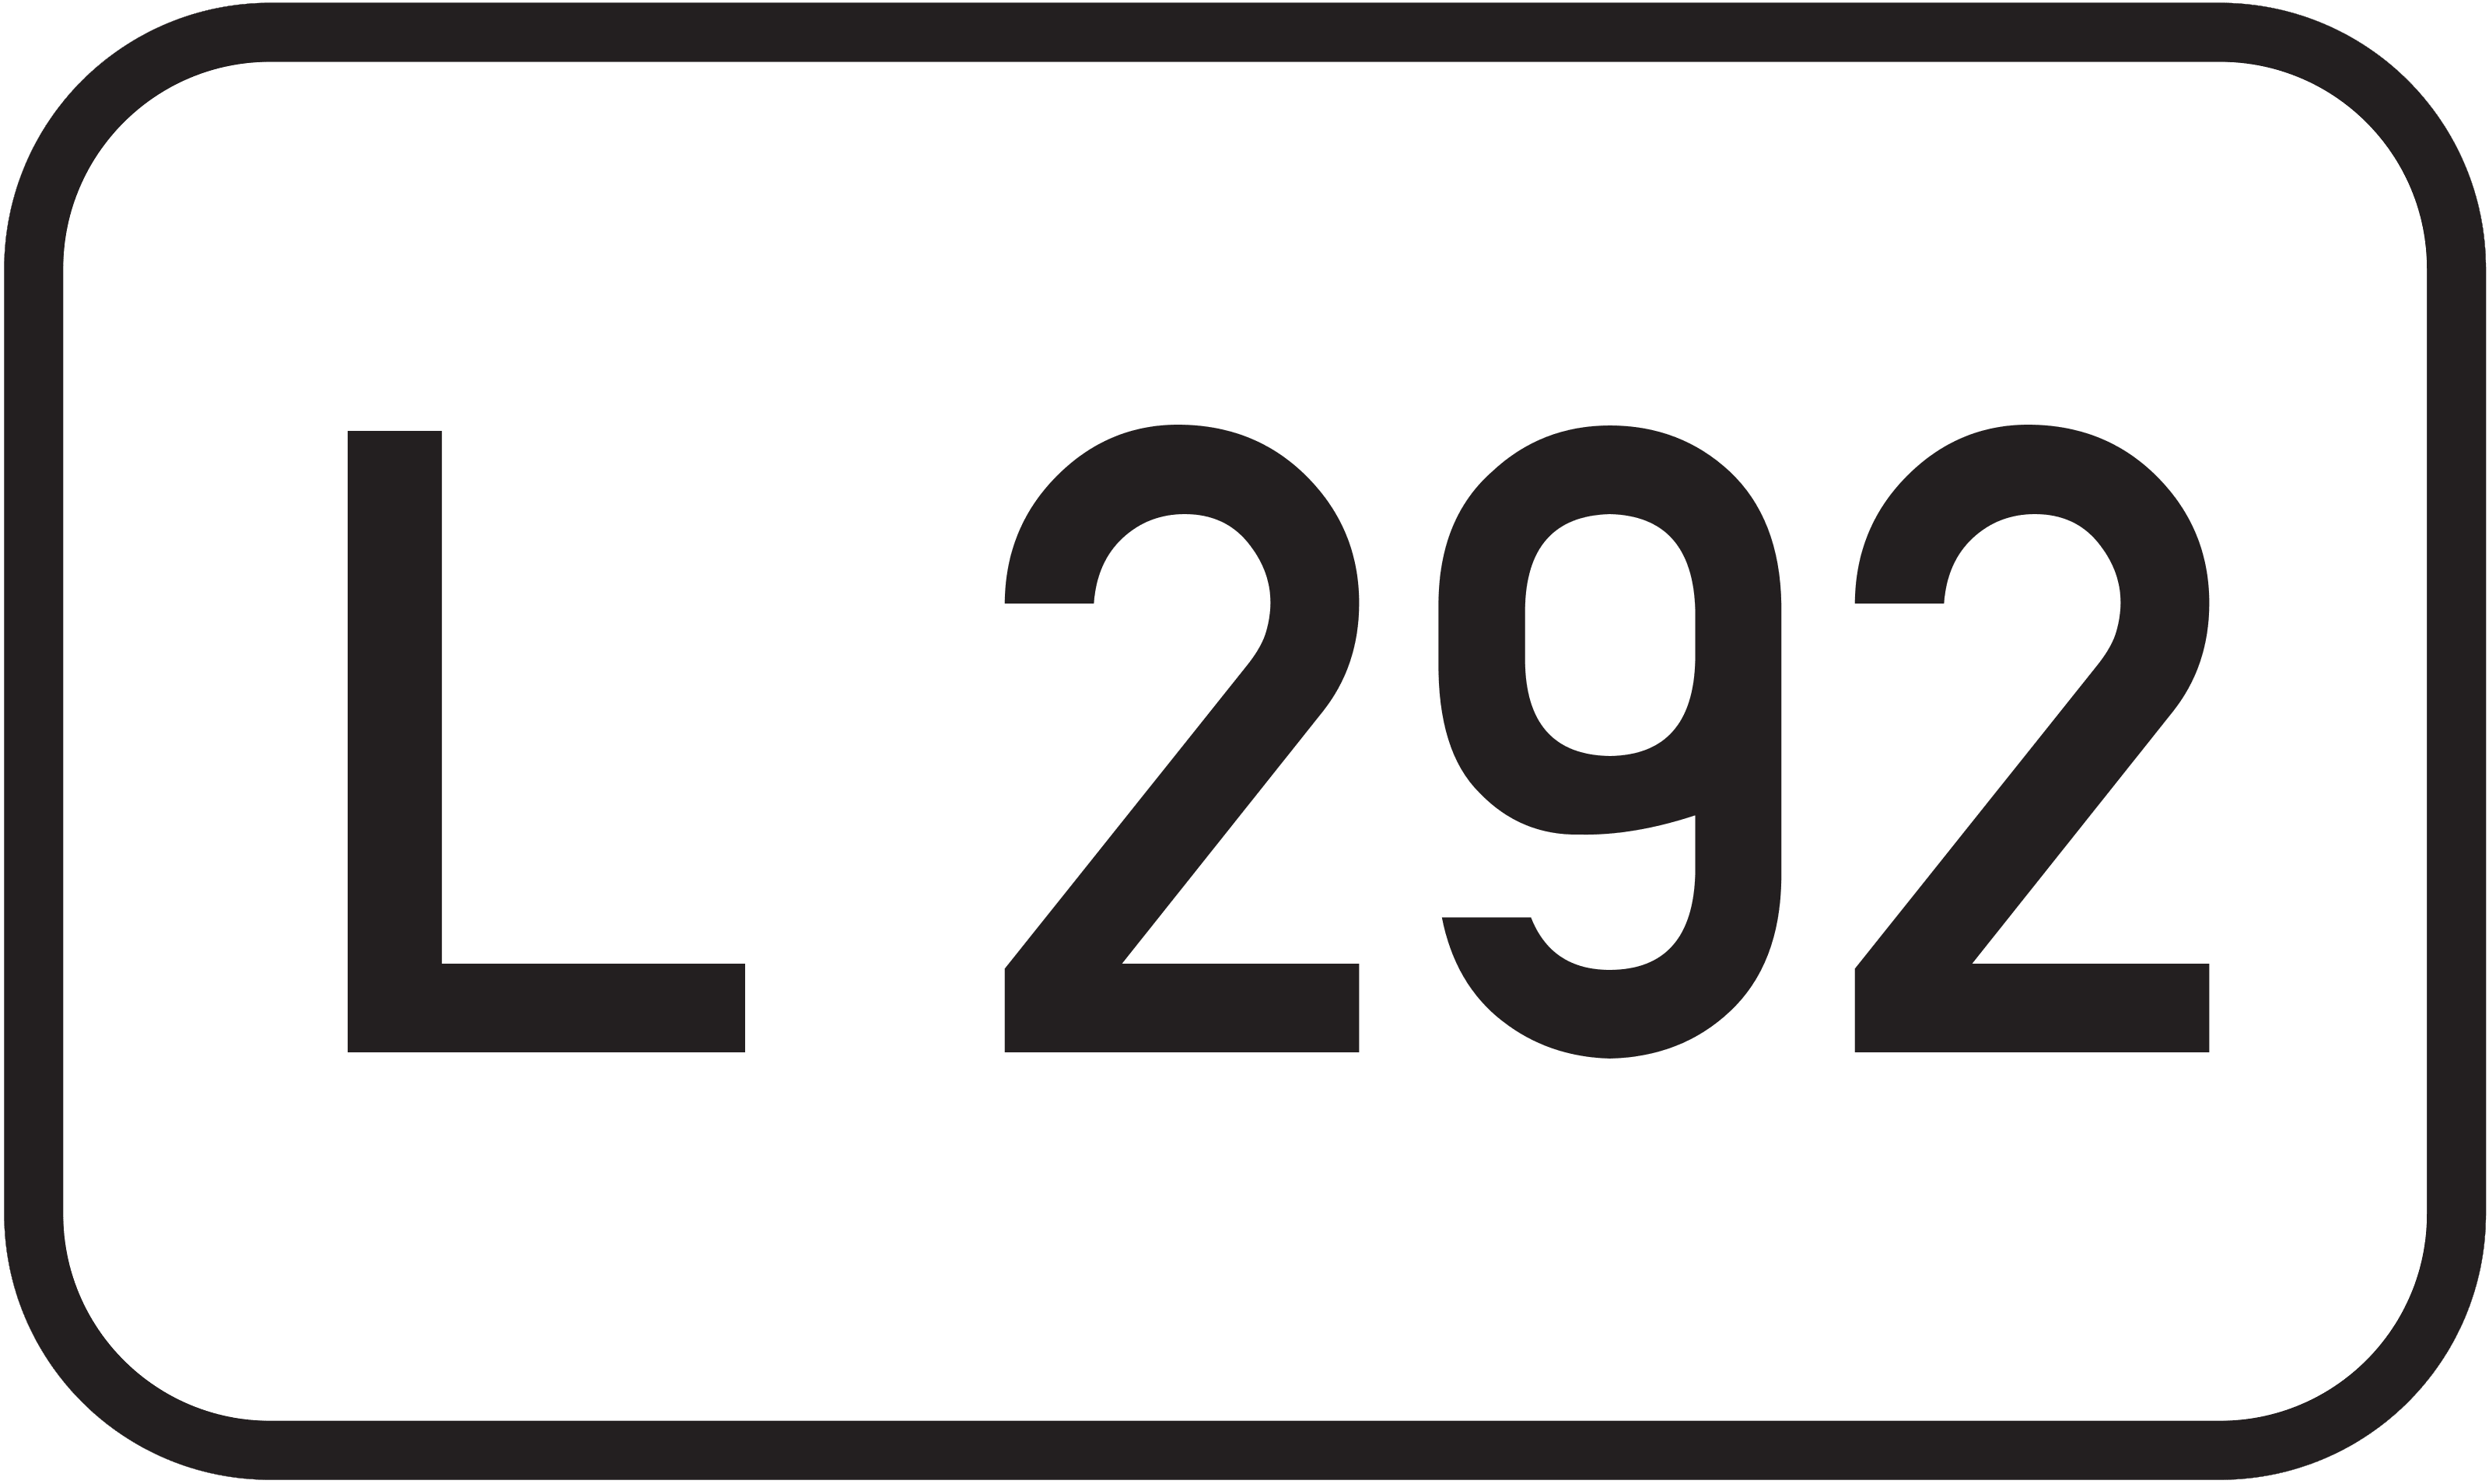 Landesstraße L 292